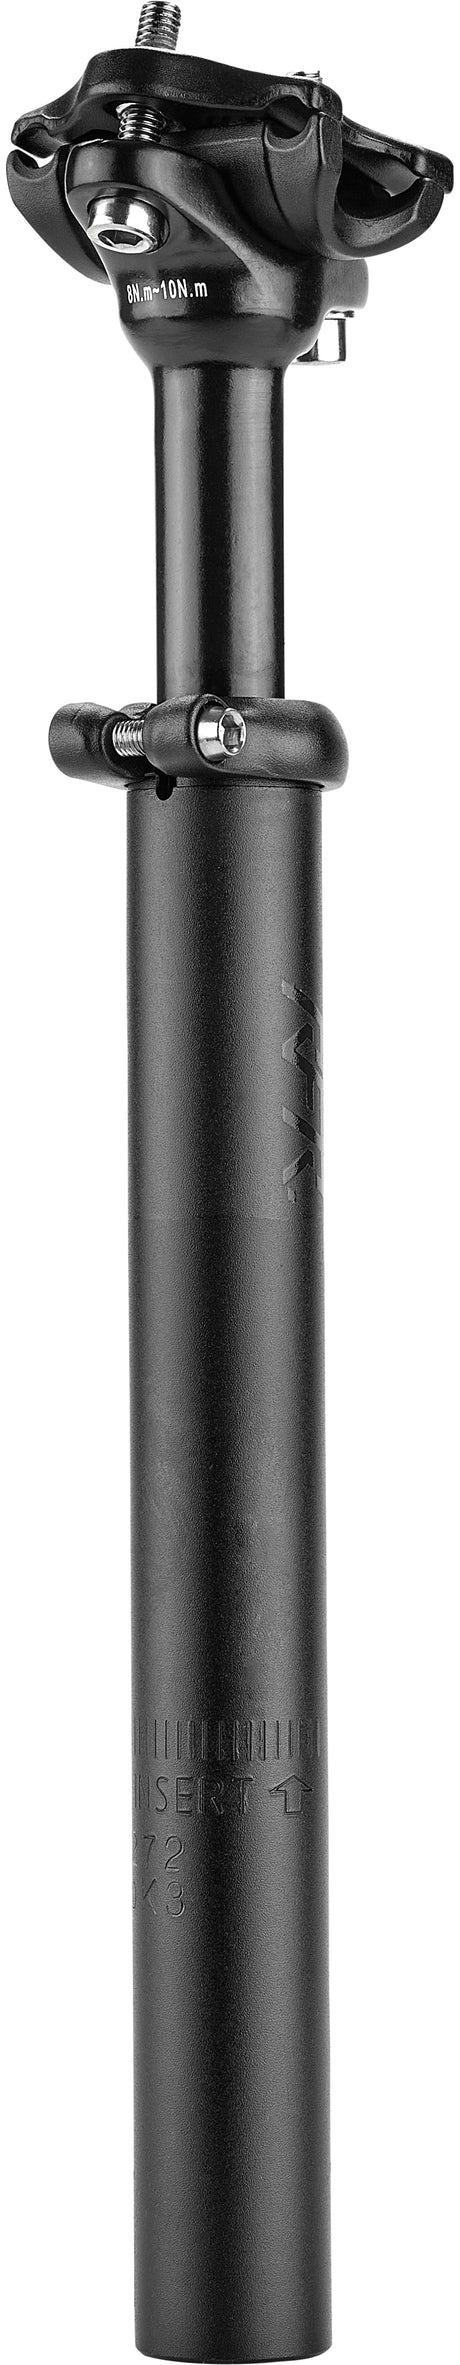 Tige de selle suspendue RFR (60 - 90 kg) noire